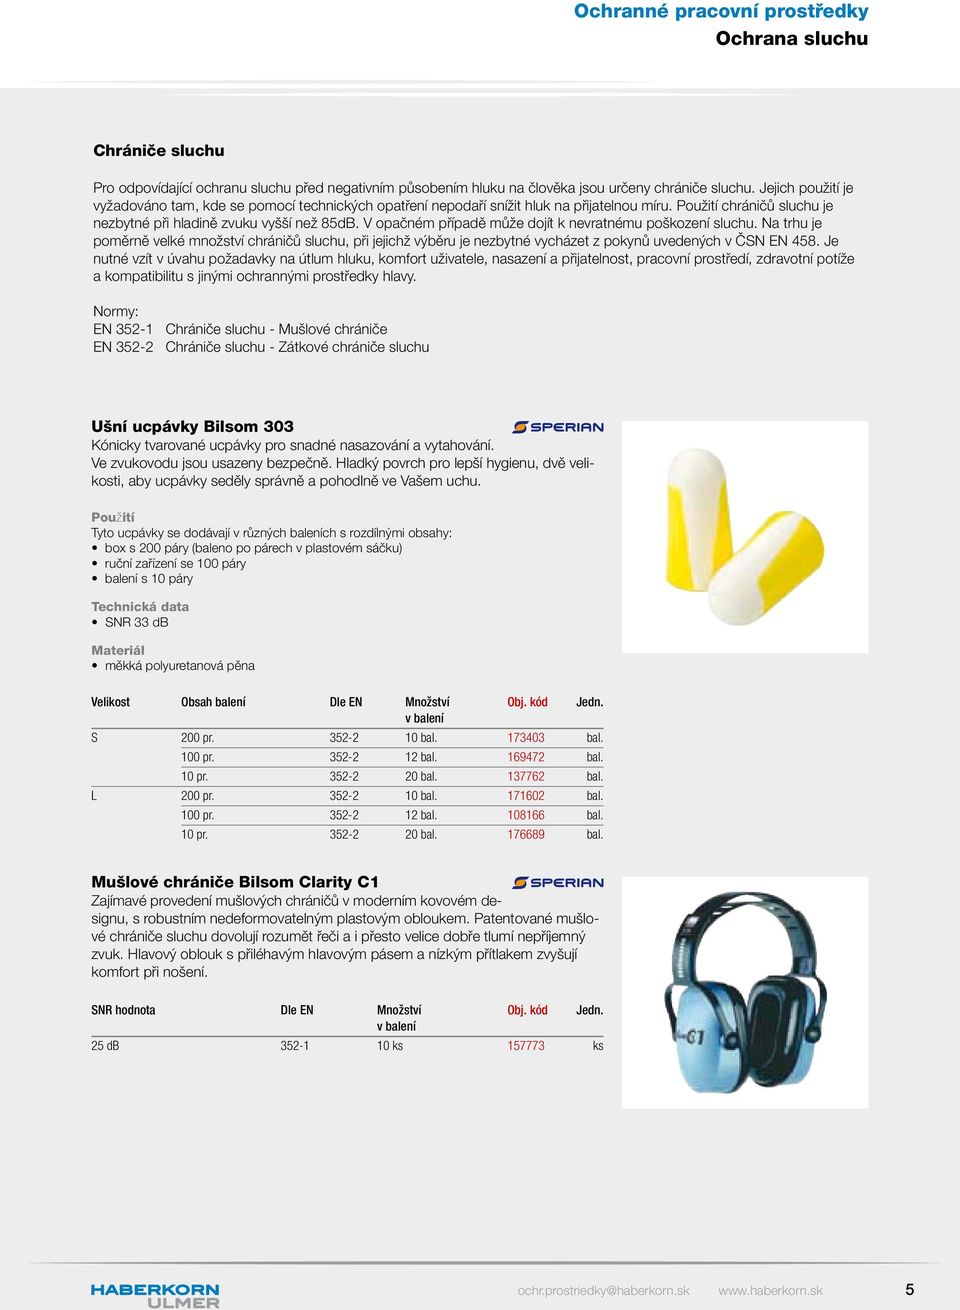 V opačném případě může dojít k nevratnému poškození sluchu. Na trhu je poměrně velké množství chráničů sluchu, při jejichž výběru je nezbytné vycházet z pokynů uvedených v ČSN EN 458.